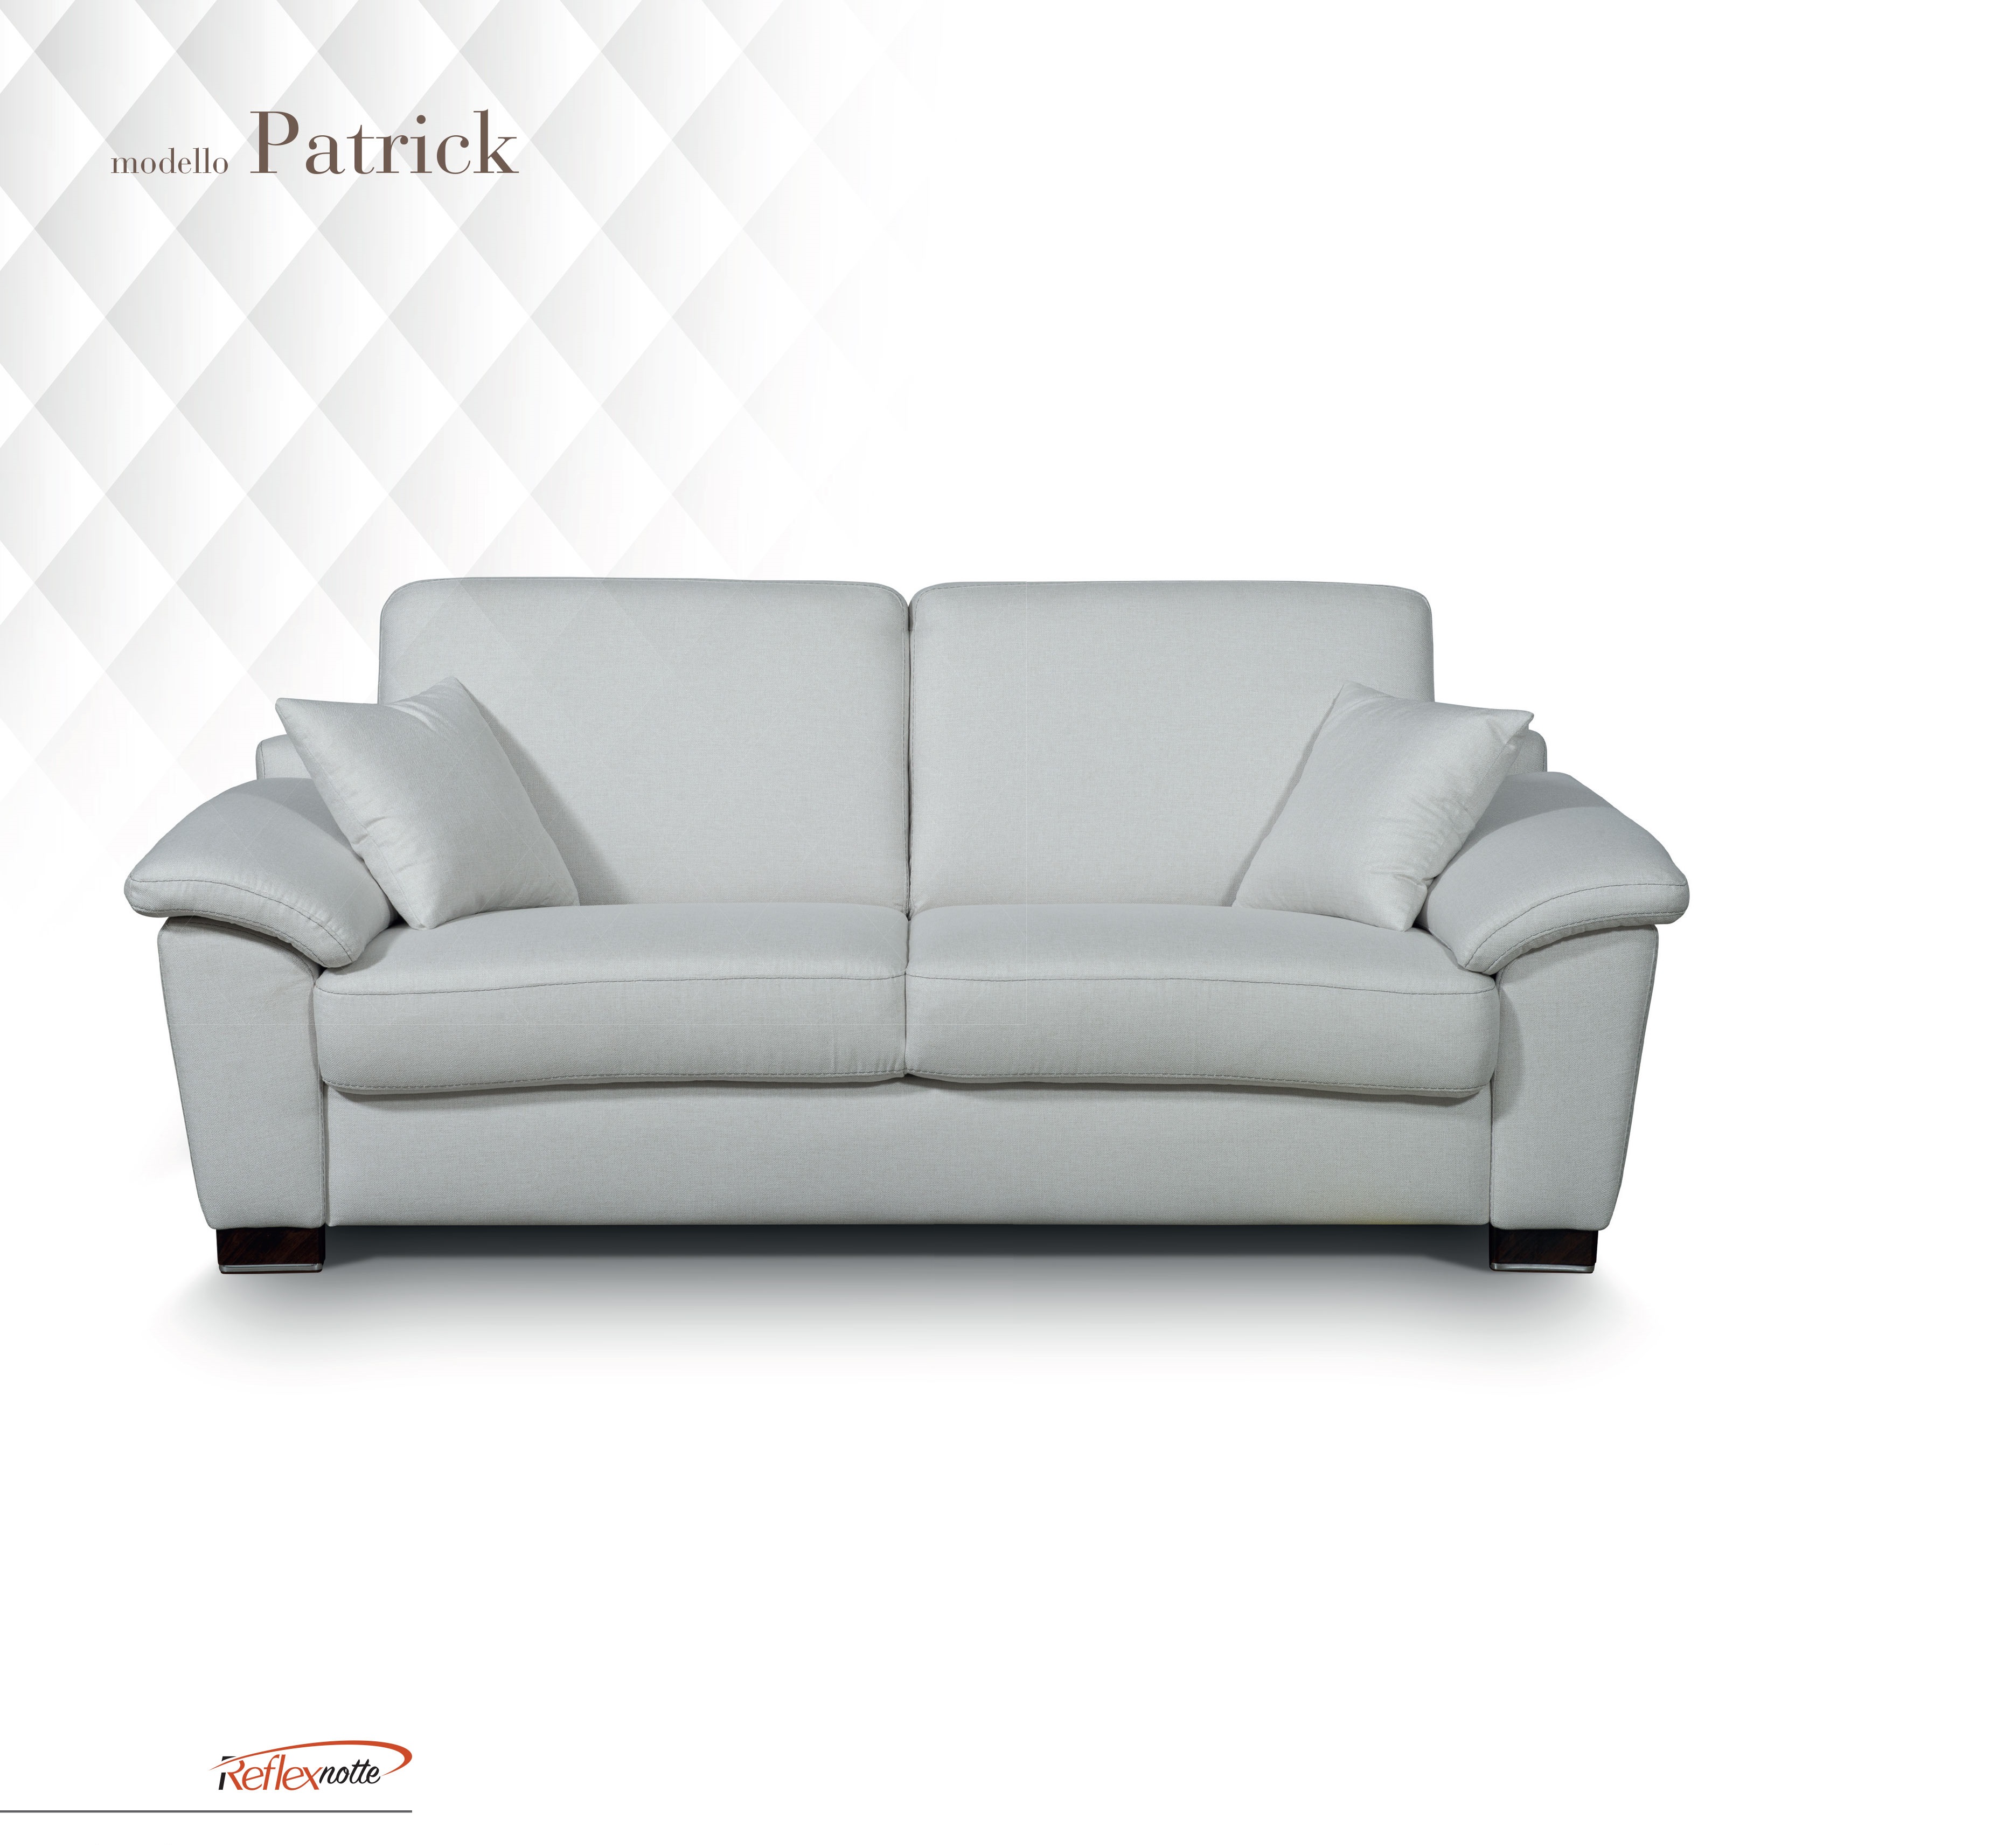 Patrick kétszemélyes fehér kanapéágy - NOVETEX - Ágyban a legjobb!